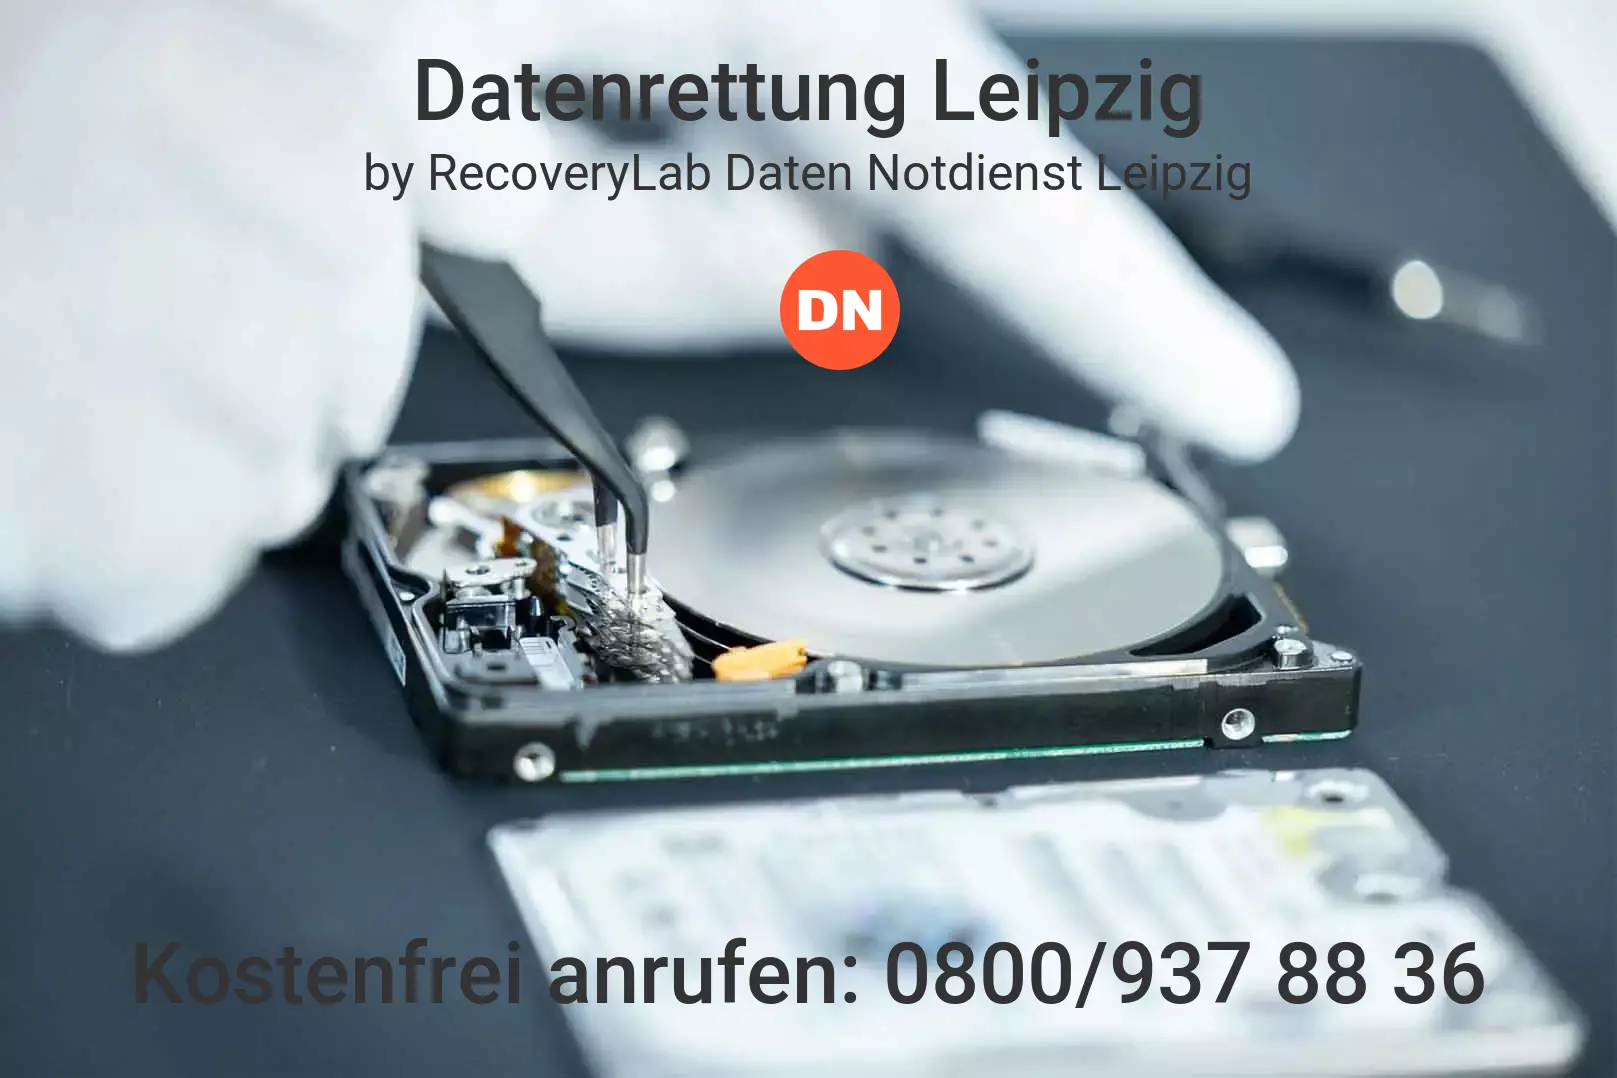 Fallstudie zu erfolgreicher Datenrettung externe Festplatte Leipzig